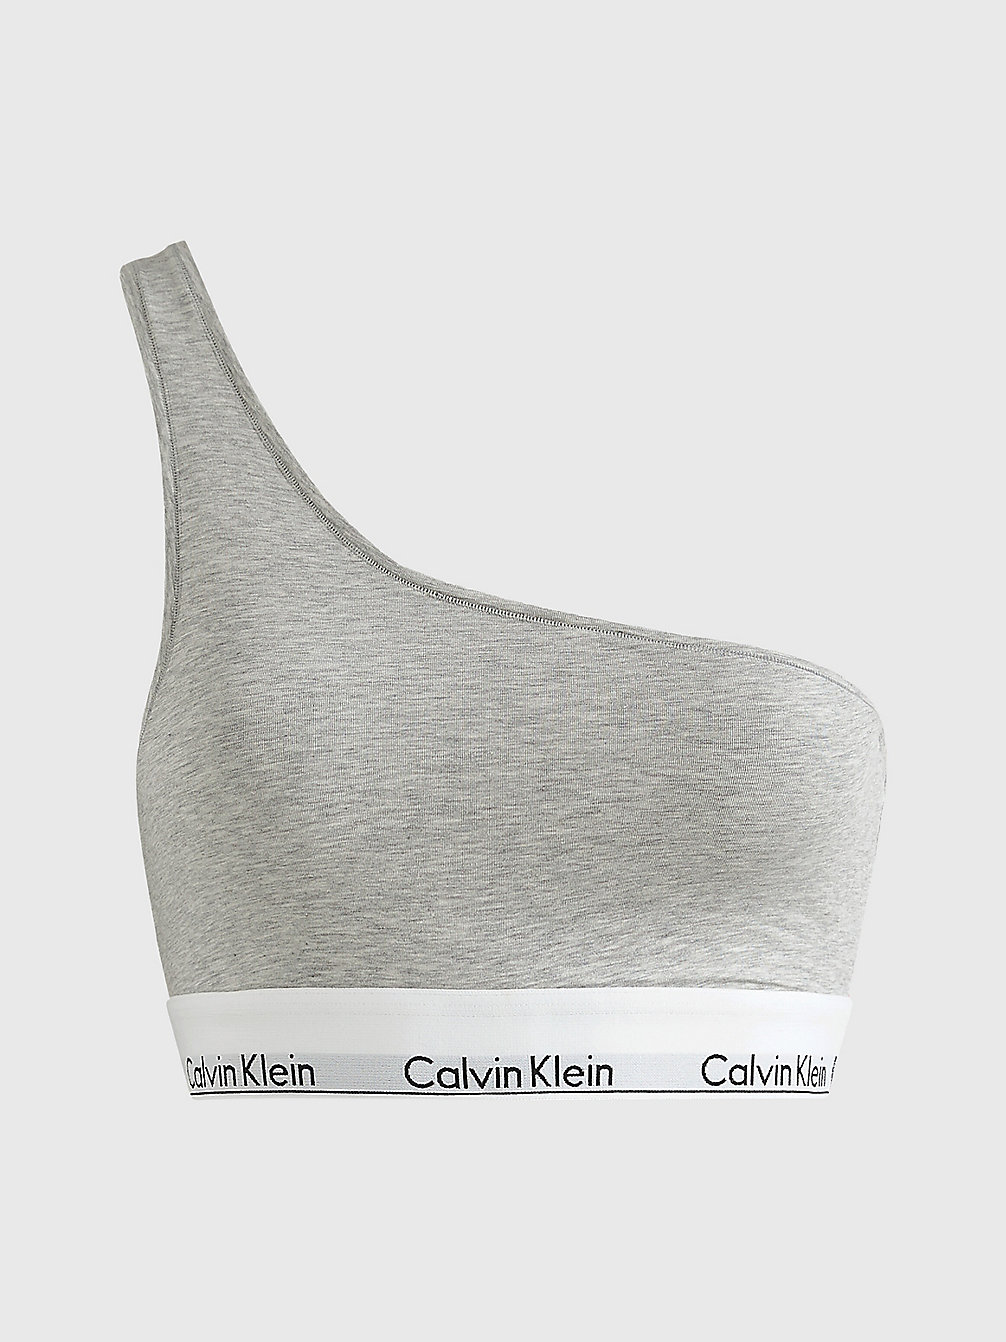 GREY HEATHER > One Shoulder Bralette – Modern Cotton > undefined Damen - Calvin Klein